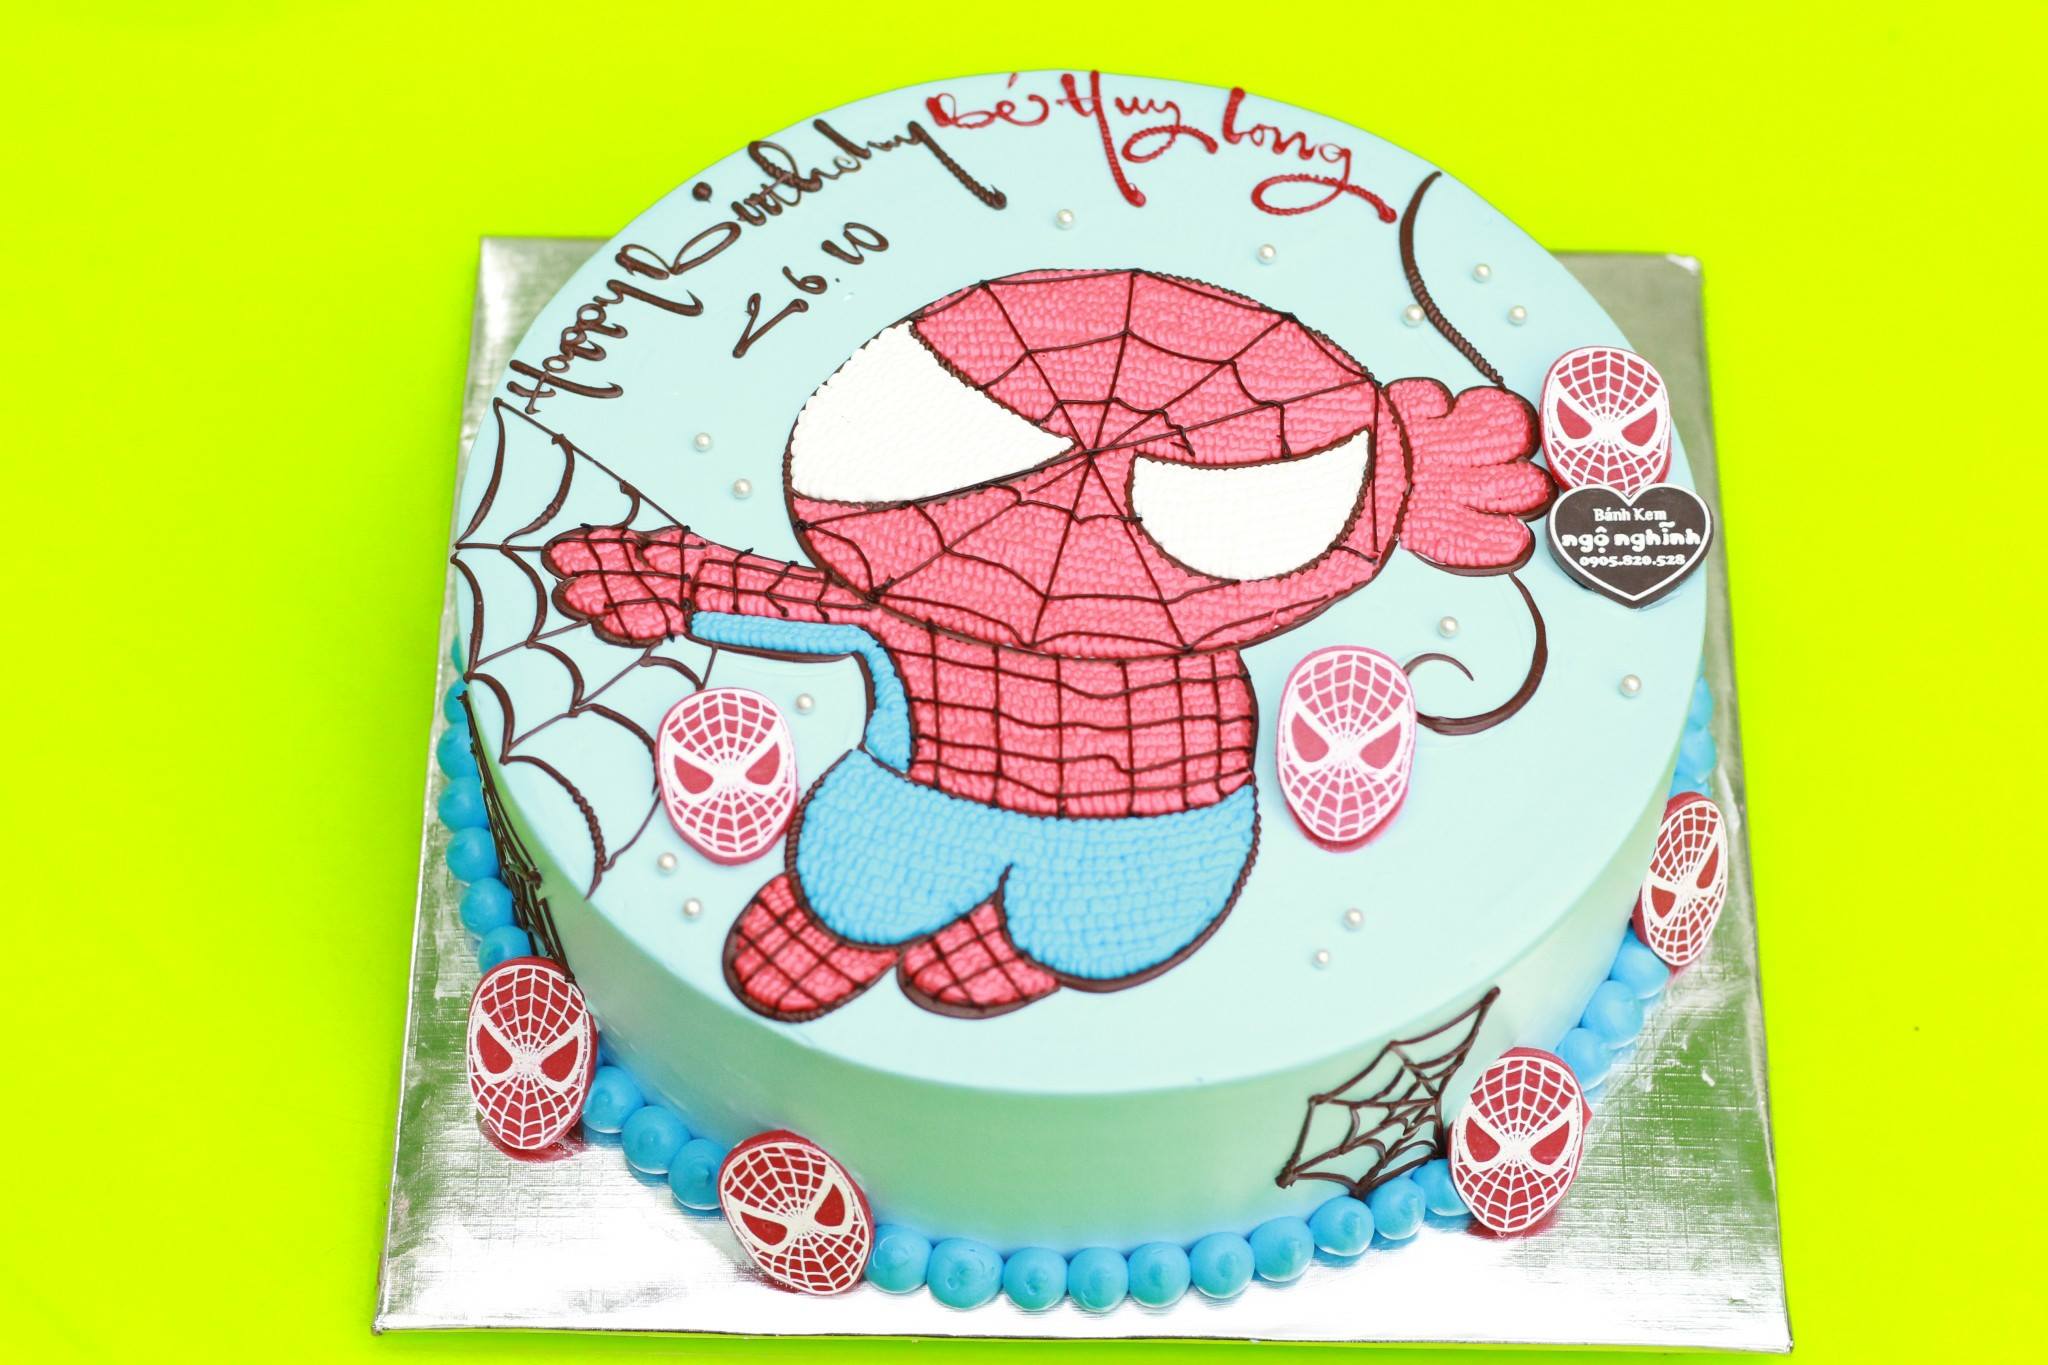 Bánh kem sinh nhật vẽ hình người nhện: Bạn muốn tạo nên một bánh kem sinh nhật độc đáo và thú vị để tặng người thân yêu? Tại sao không thử vẽ hình Người Nhện lên bánh kem của mình? Hình ảnh này sẽ giúp bạn có thêm những ý tưởng và chi tiết để tạo nên một sản phẩm hoàn hảo.